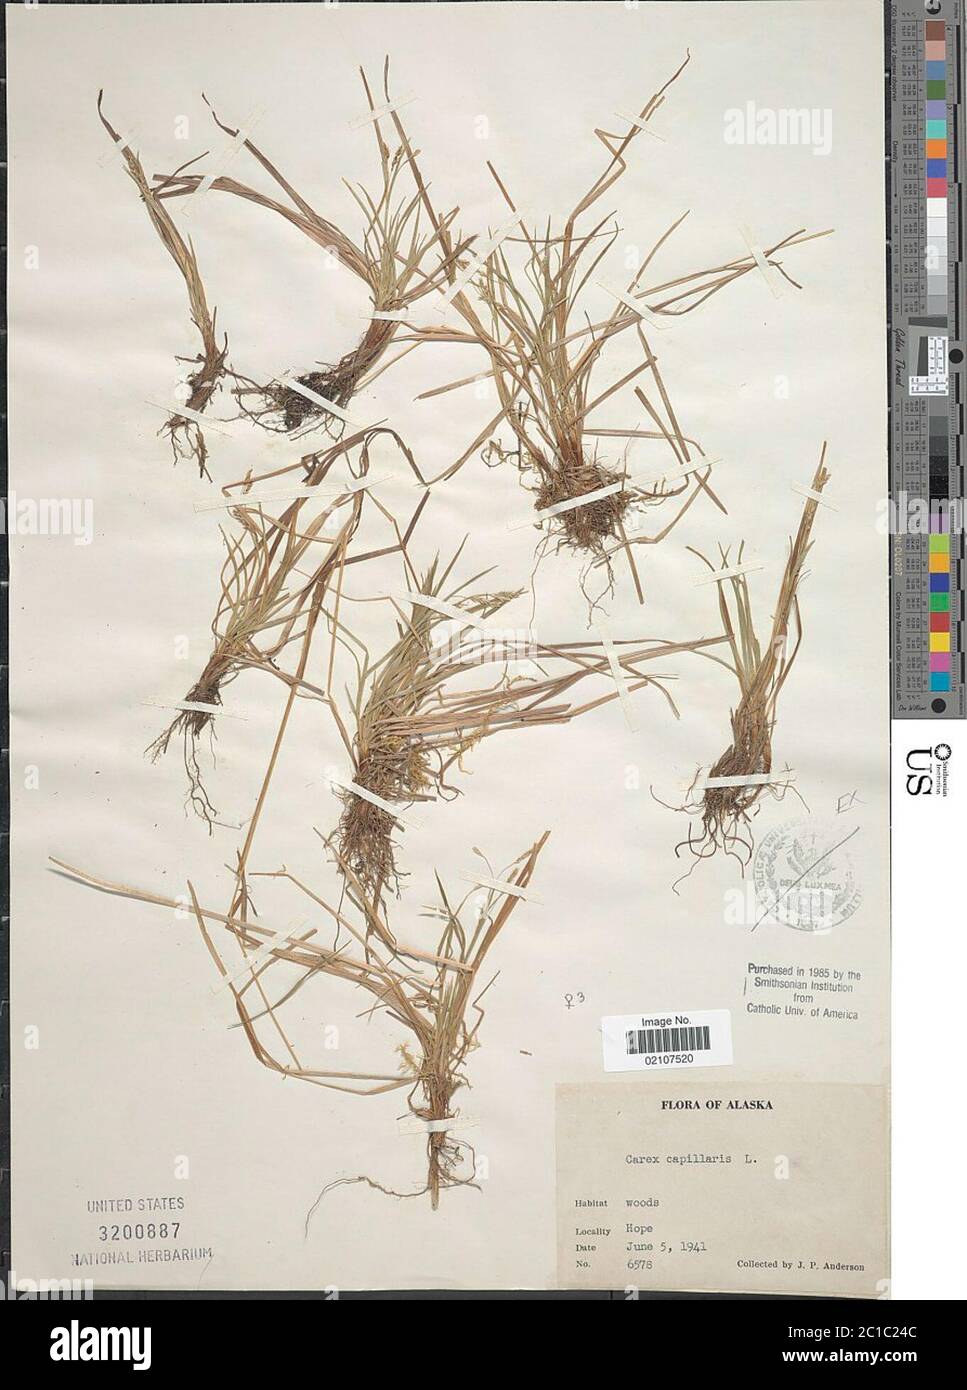 Carex capillaris L Carex capillaris L. Stock Photo